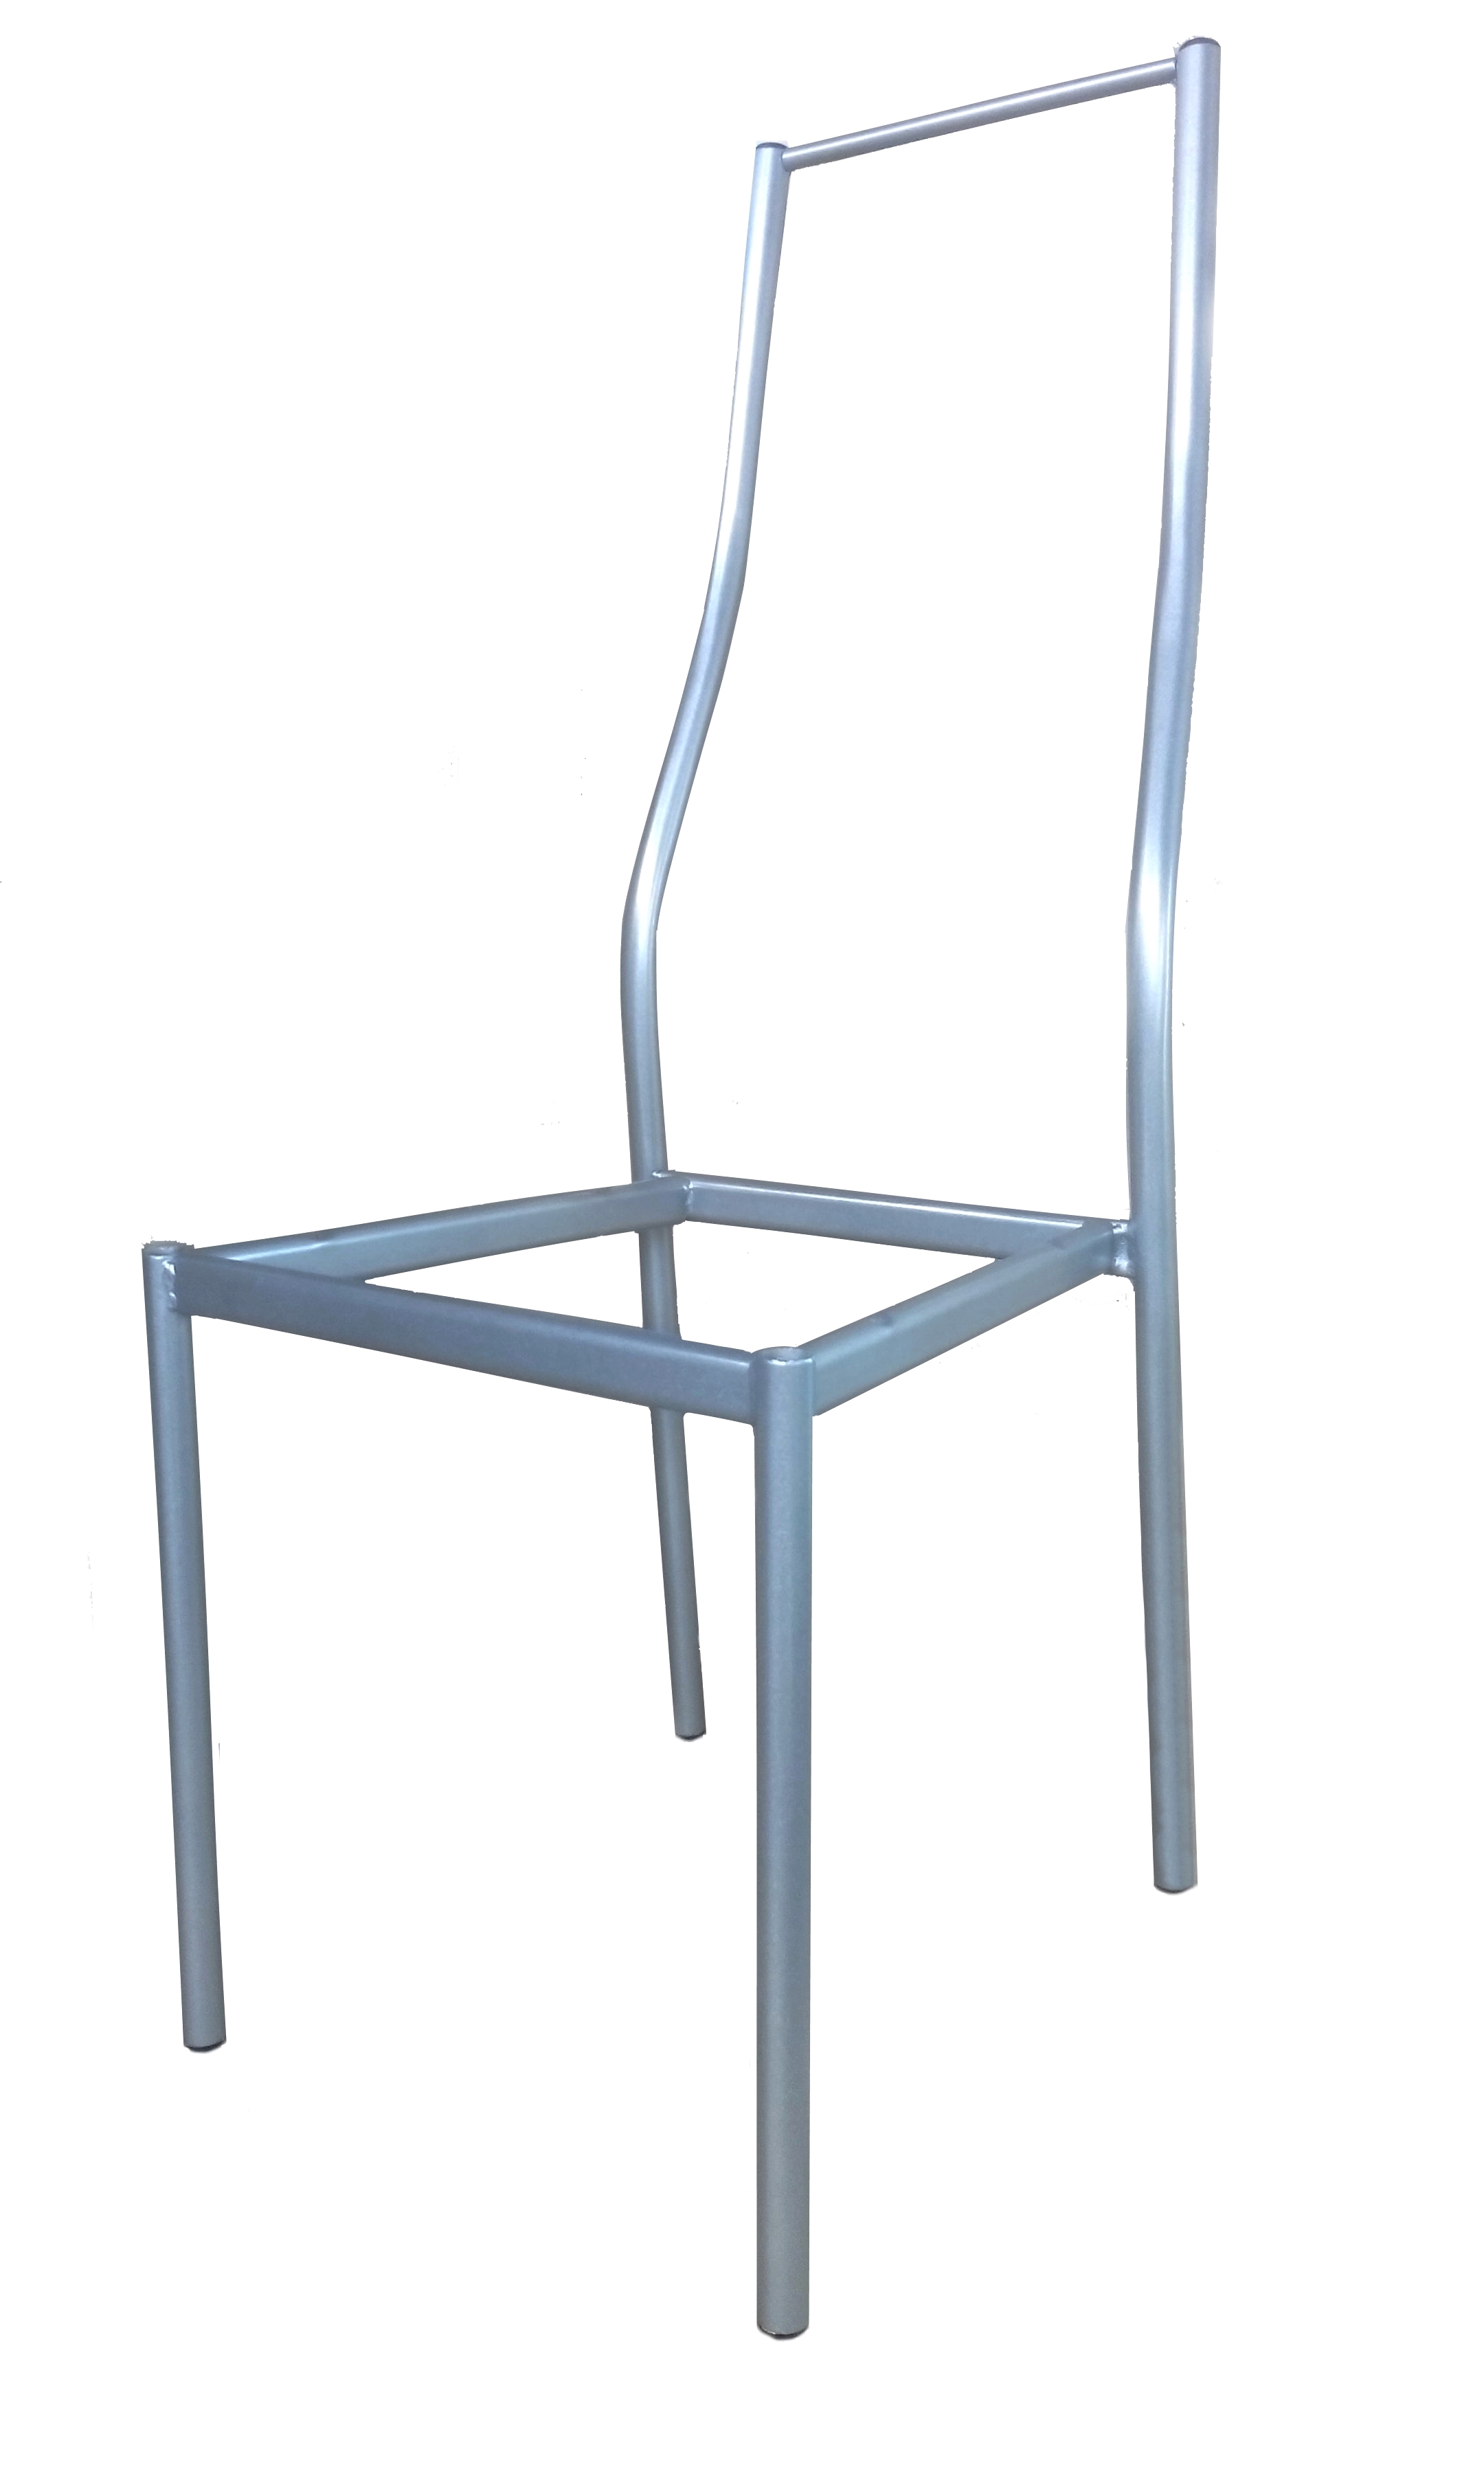 оборудование для изготовления стульев из металла